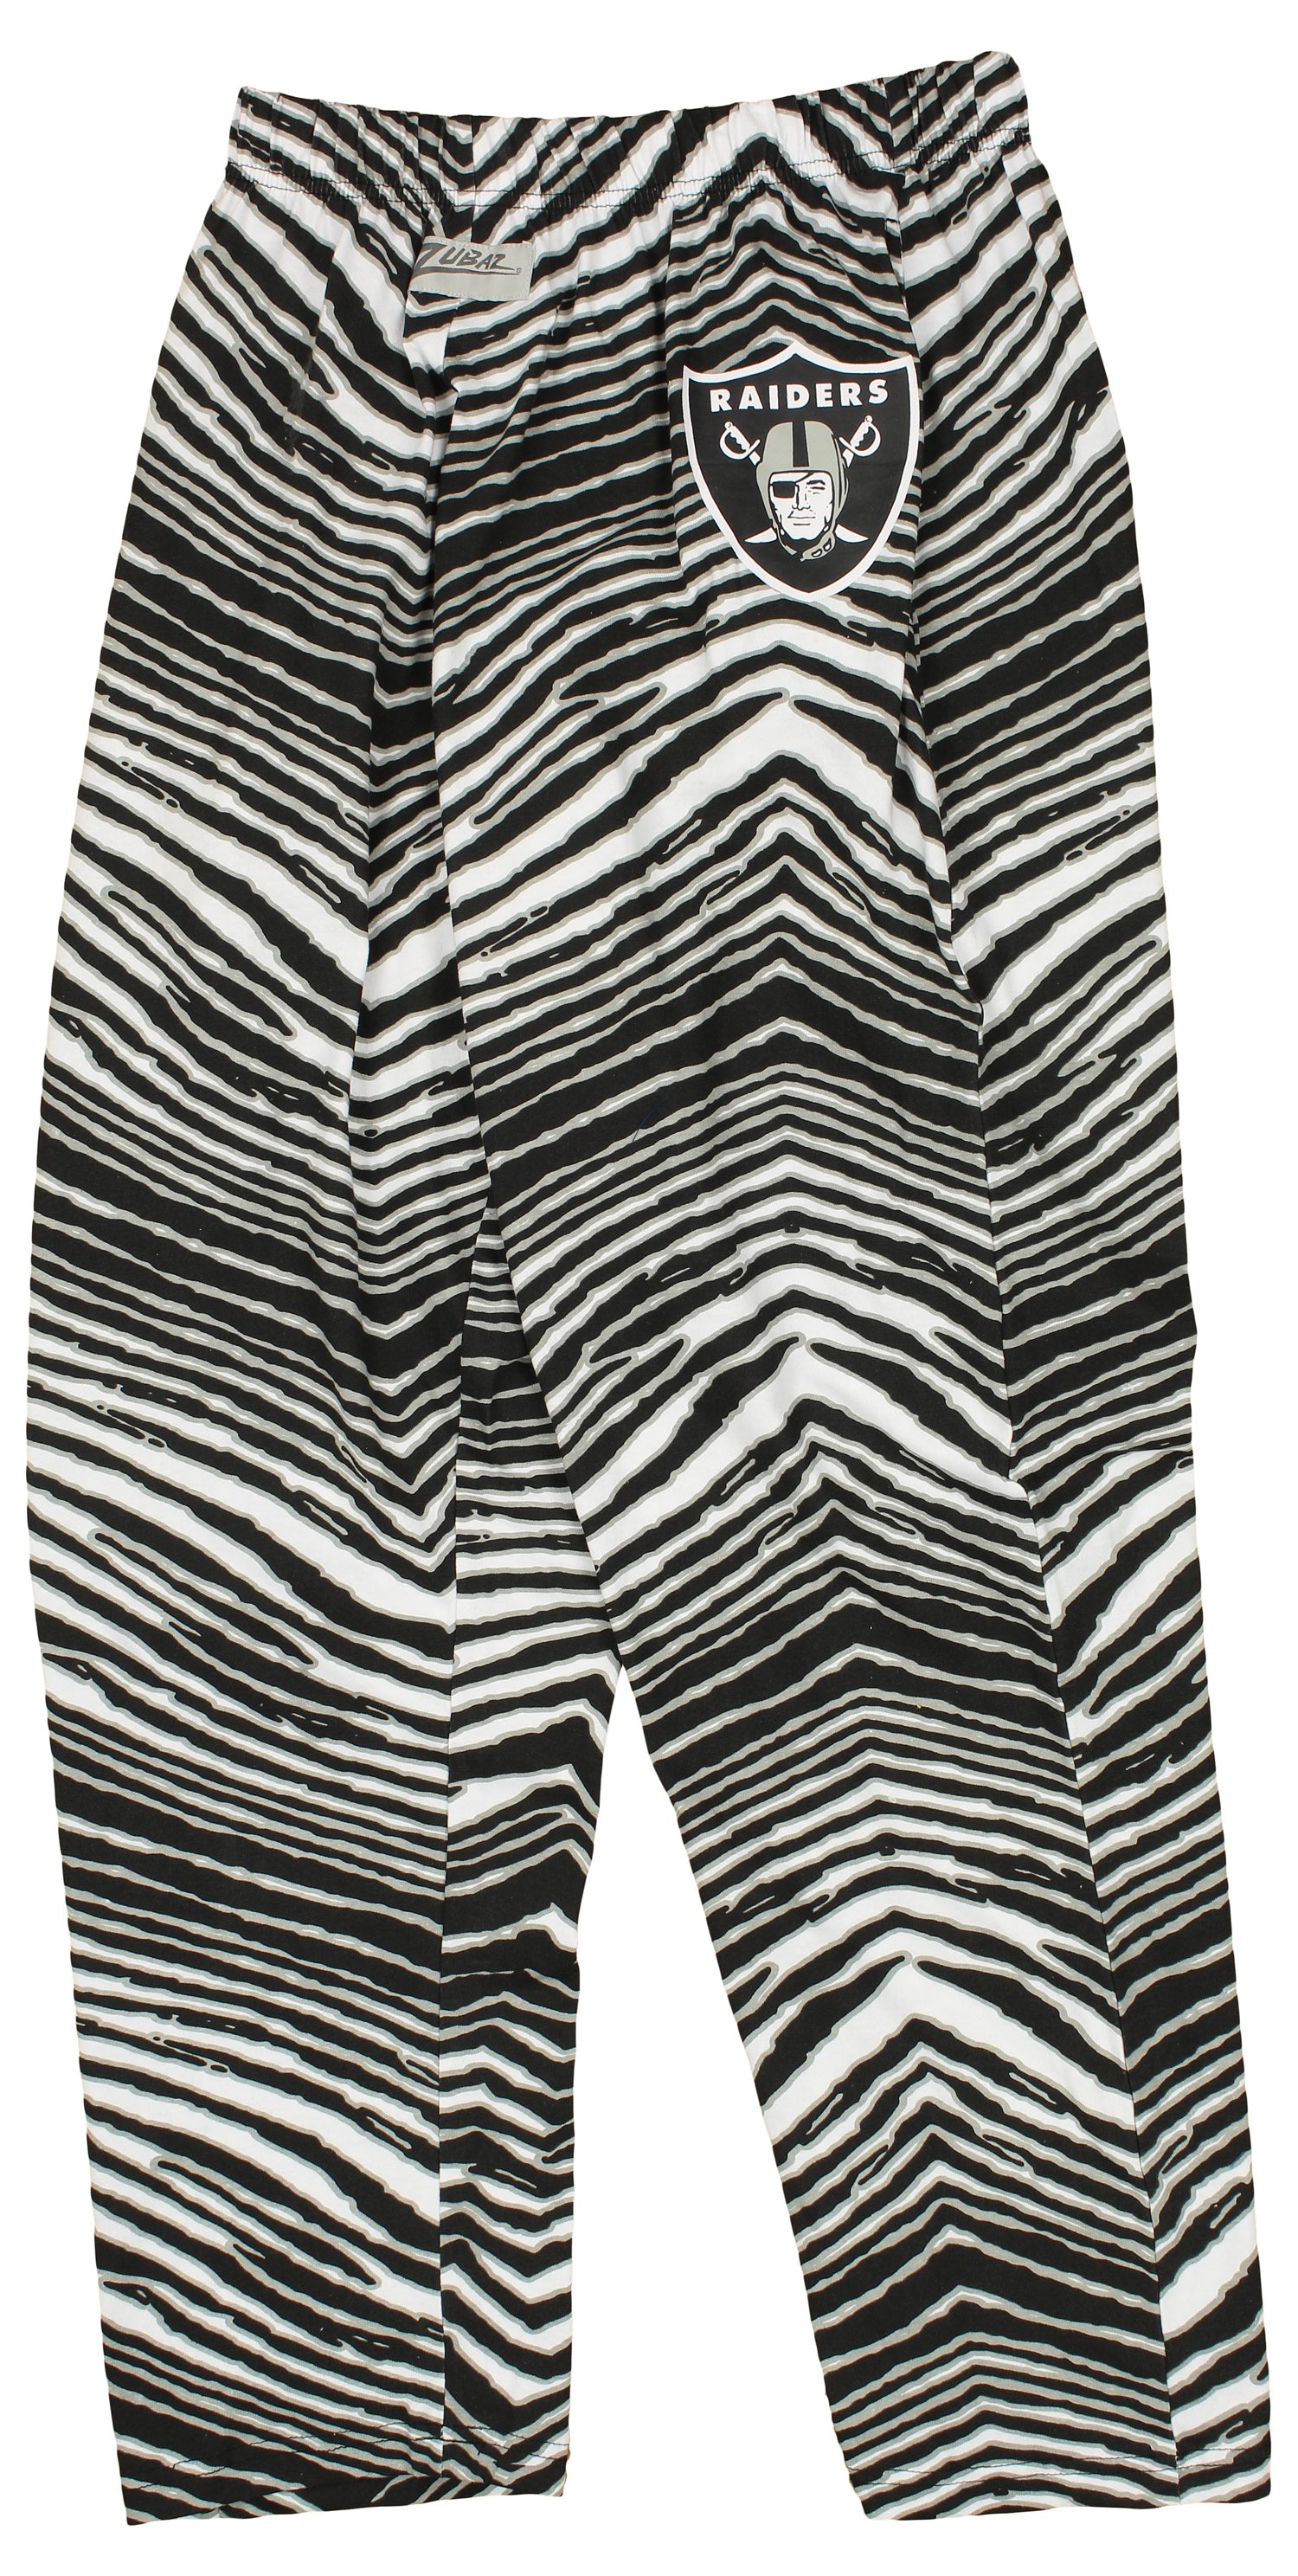 Zubaz Las Vegas Raiders Black/Silver Zebra Pants Size: Small